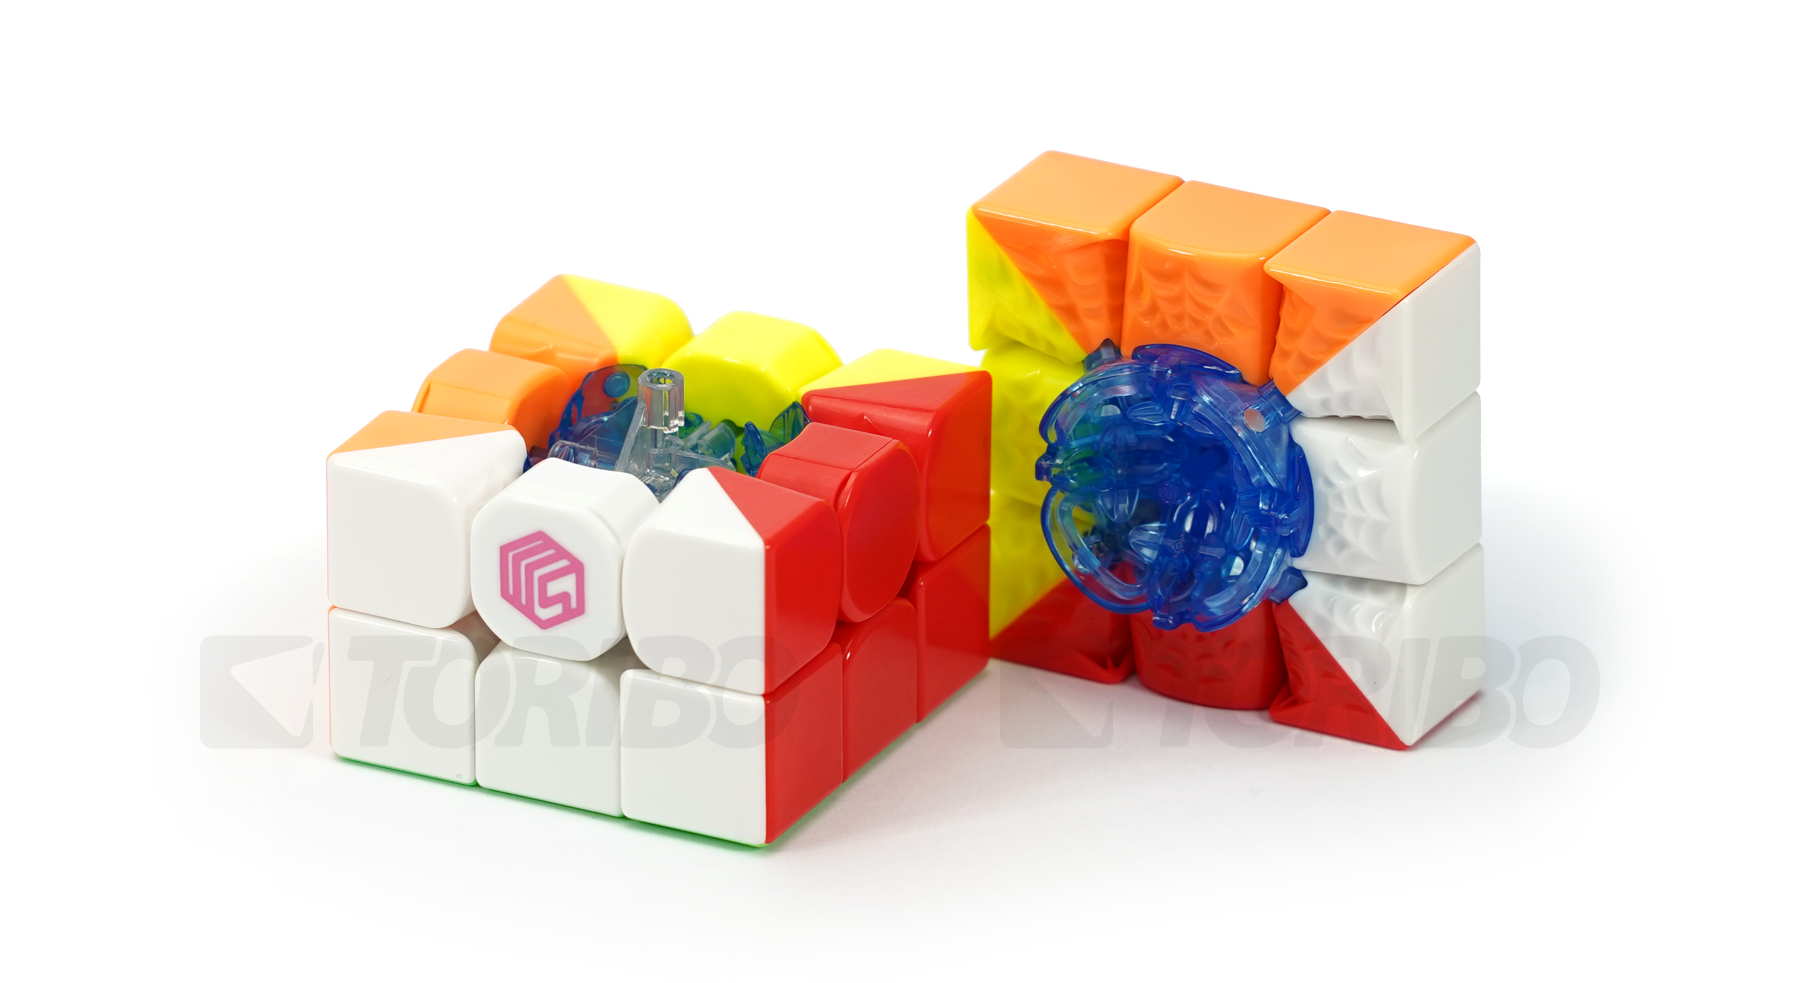 NOVOS Cubos Mágicos da MS Cube: MS3L Versões Standard e Enhanced